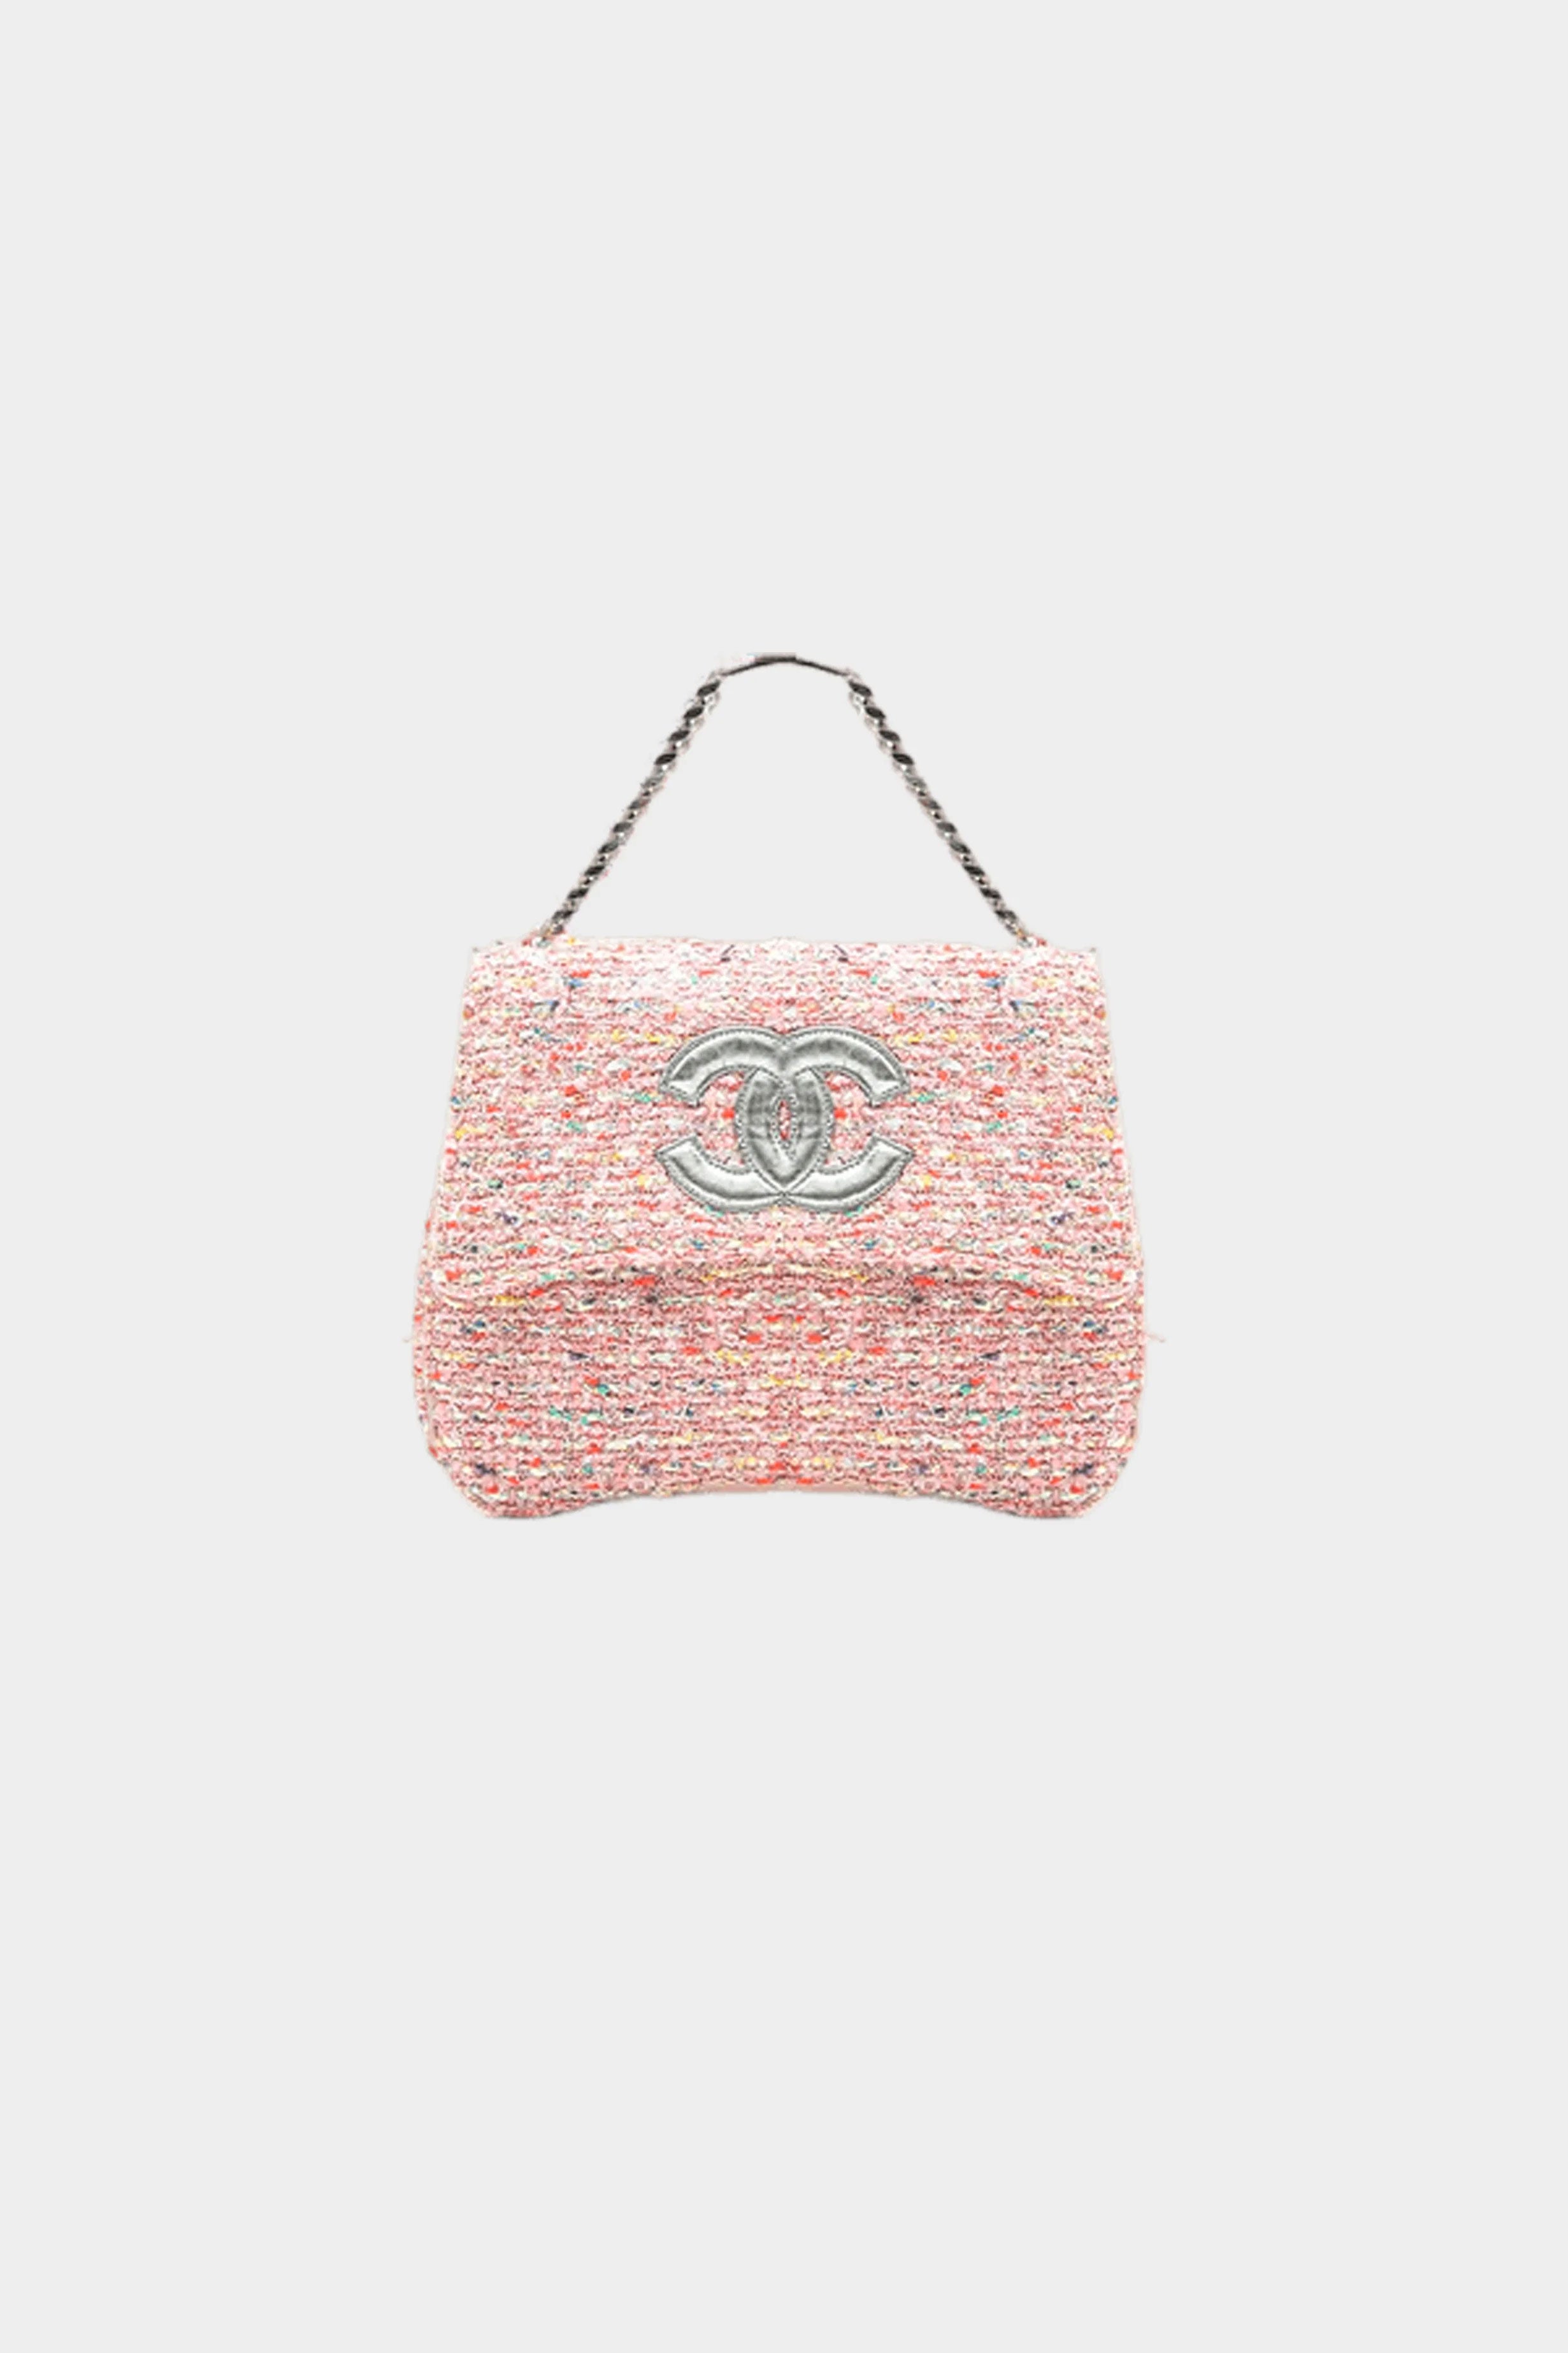 CHANEL Coco Top Handle Tweed Shoulder Bag Pink